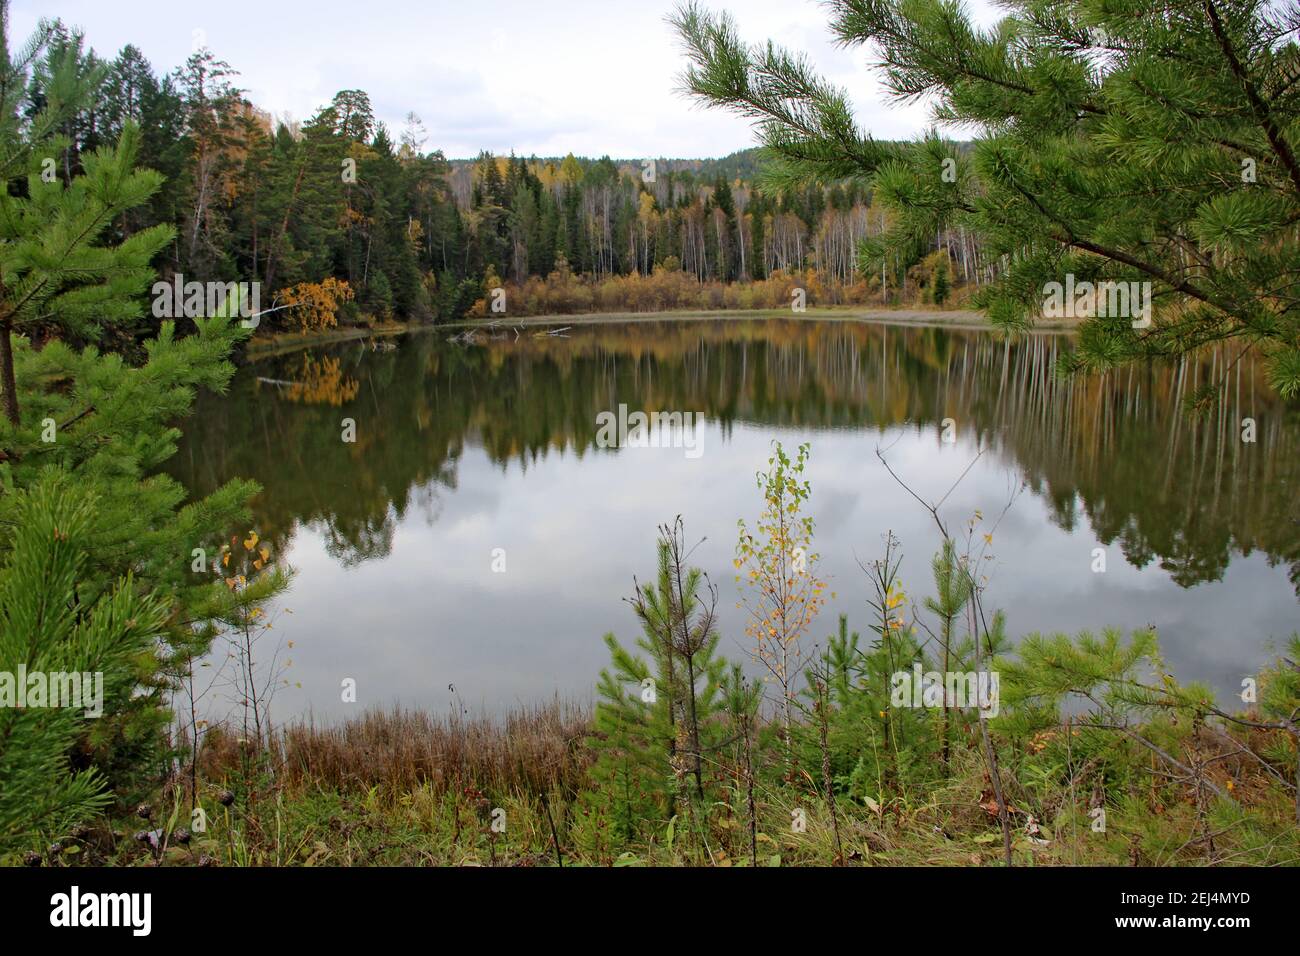 Ein Blick durch das Gras auf die ruhige Oberfläche des Sees. Es sind sichtbar von den Wundern des Herbstwaldes. Stockfoto